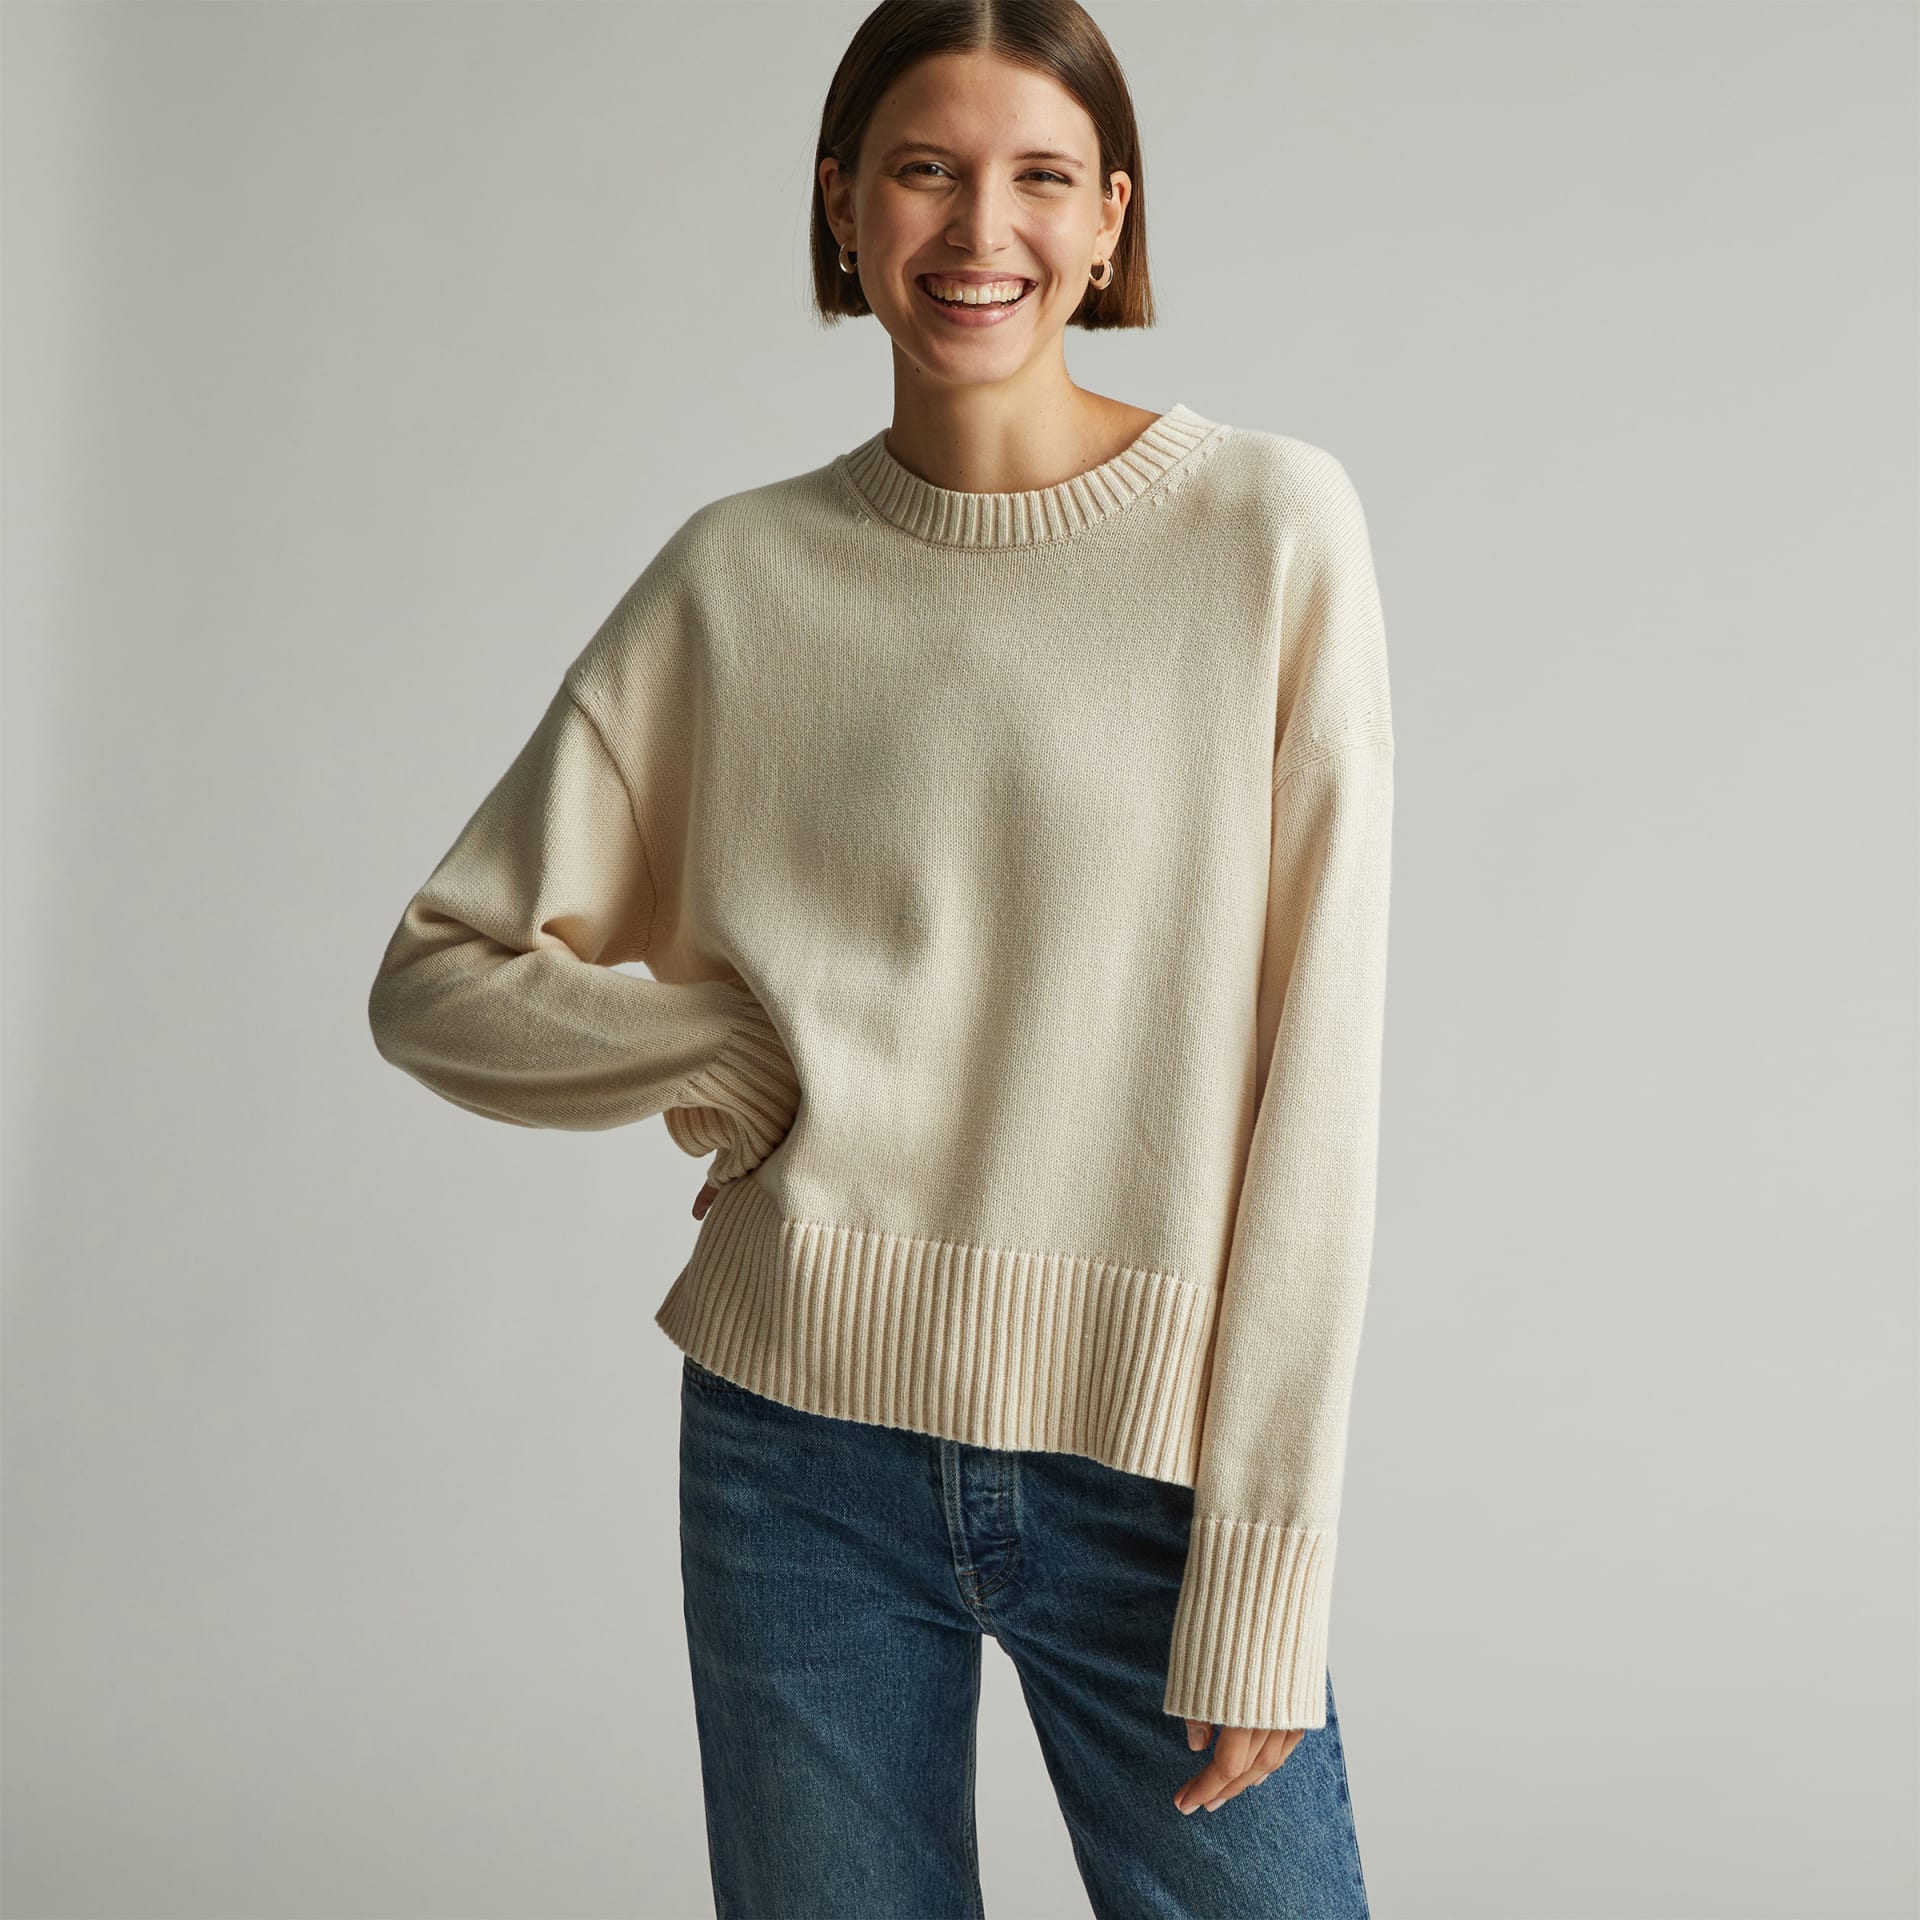 Woman in cream sweater 